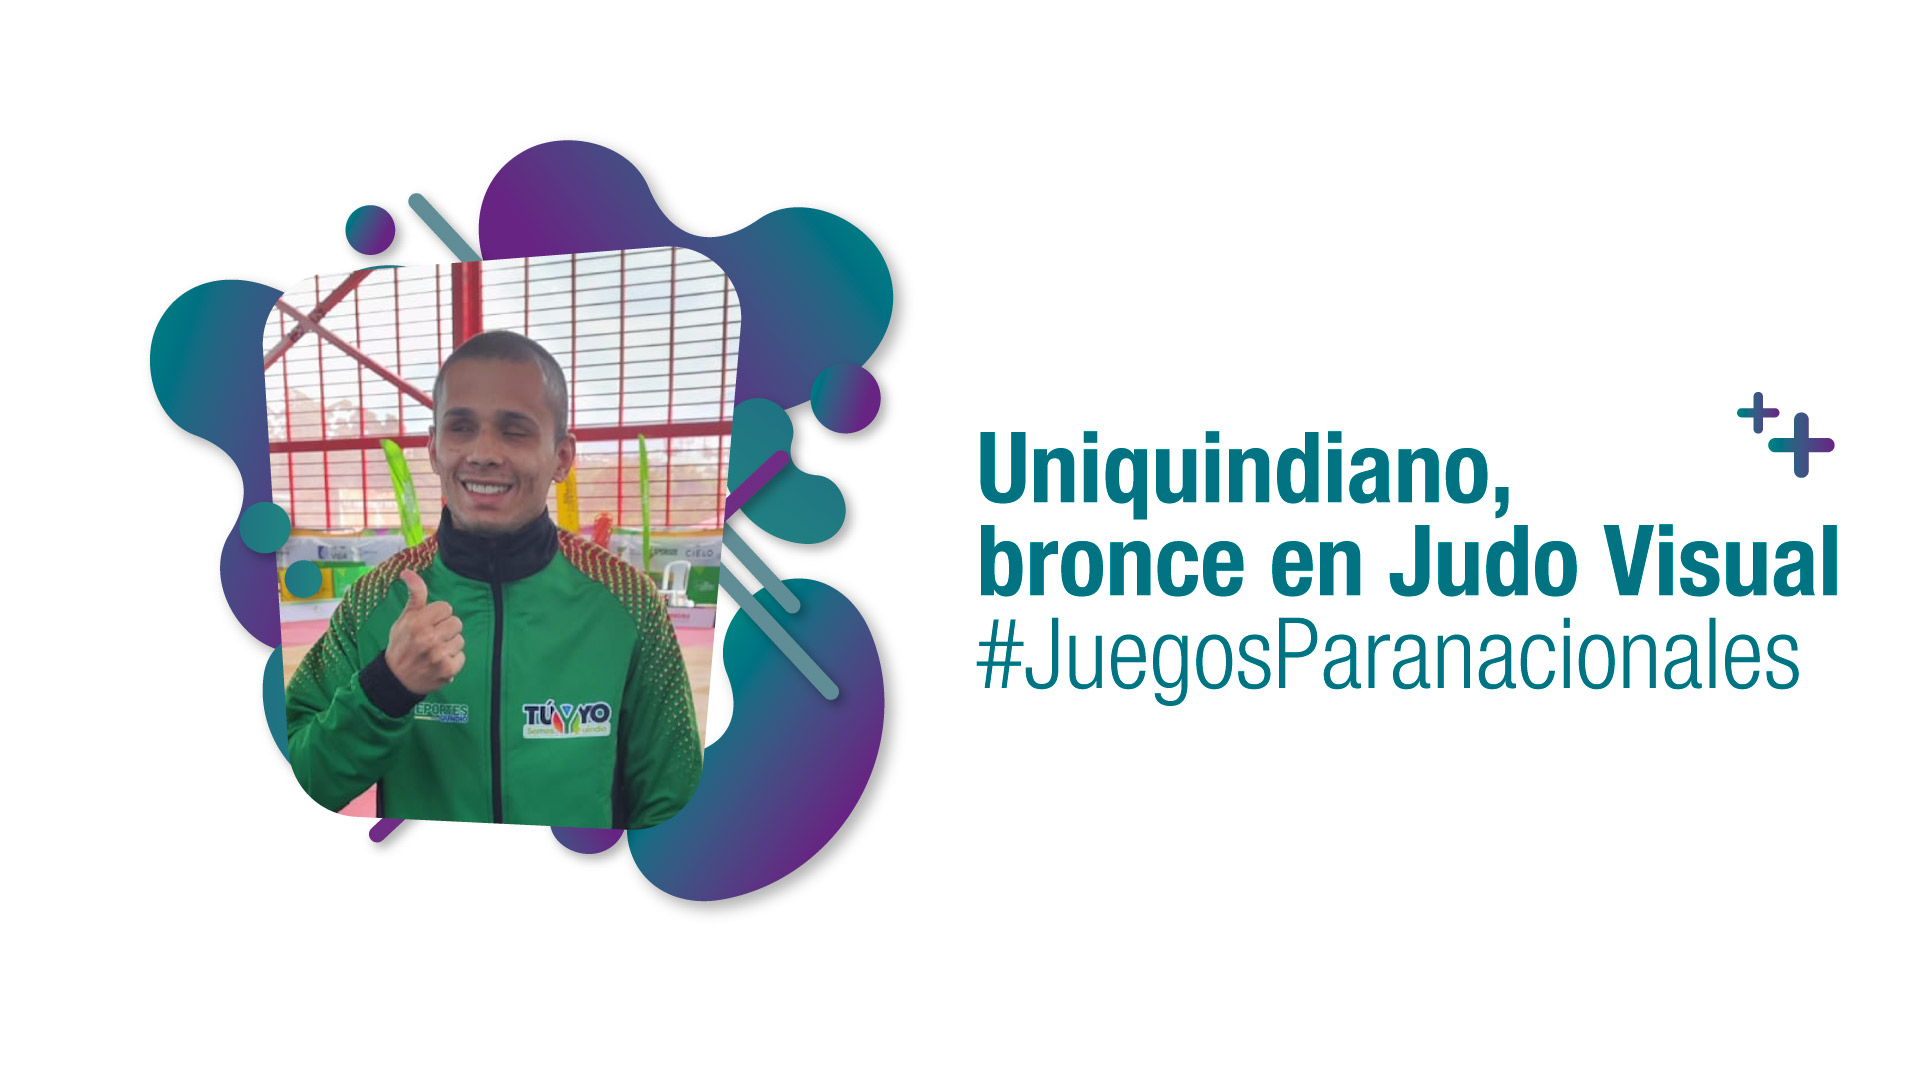 Cristian Orozco Escárraga, uniquindiano que ganó bronce en Judo Visual #JuegosParanacionales